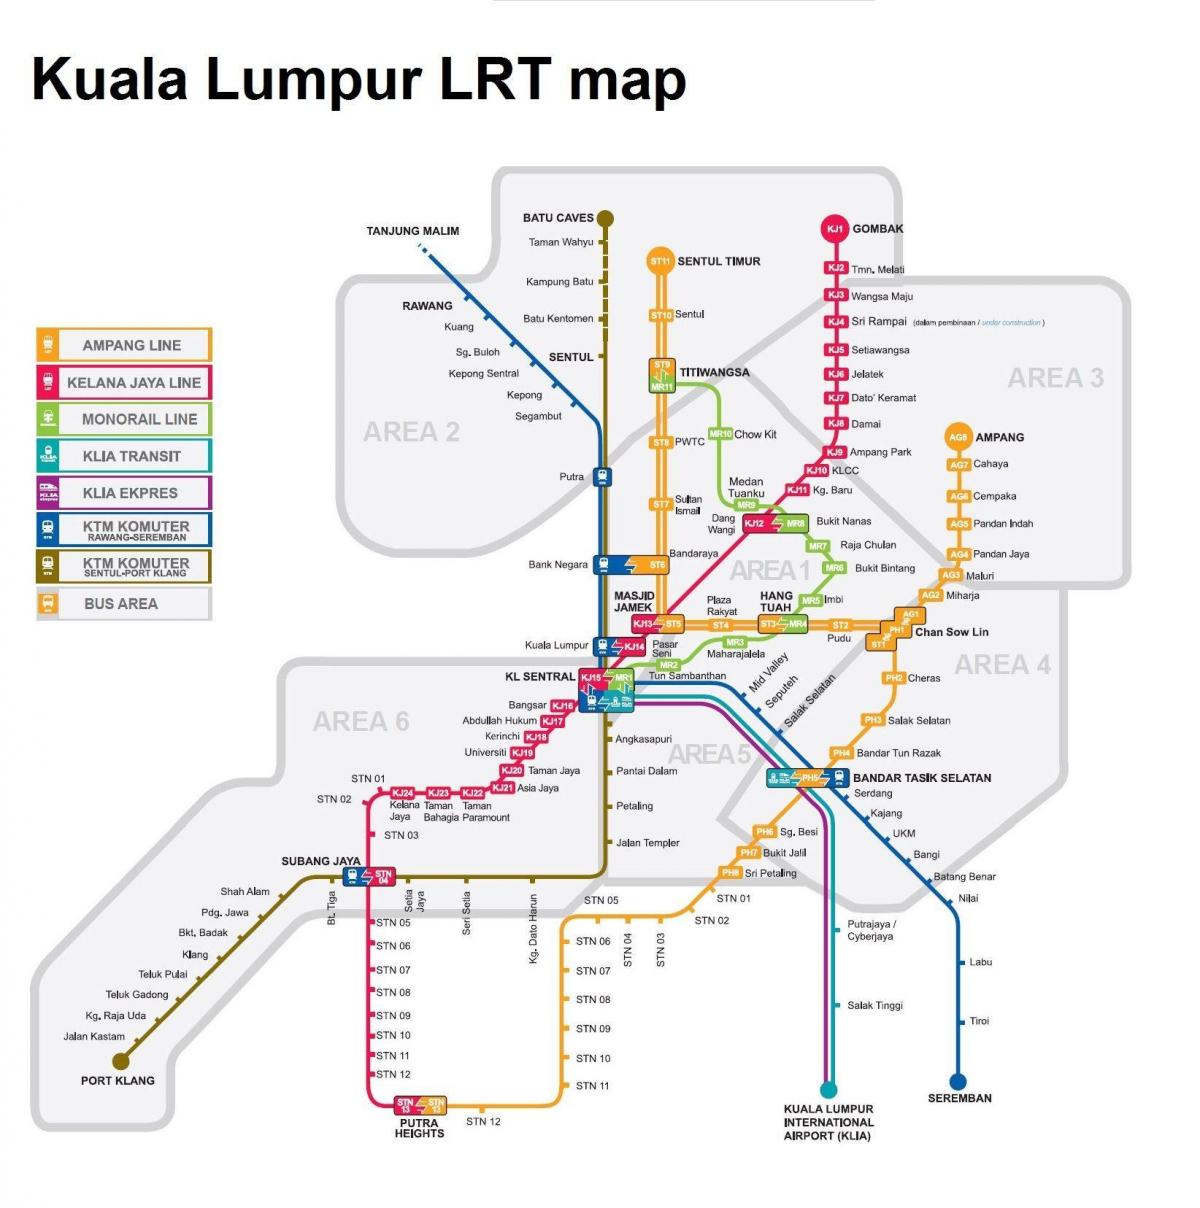 lrt mapu malajzie 2016